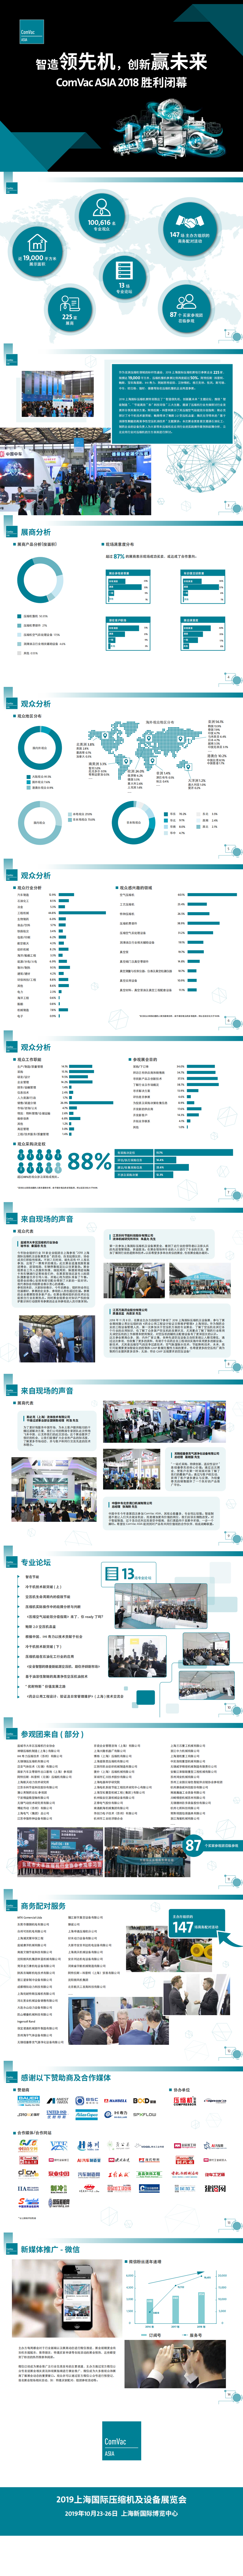 上海國際壓縮機及設備展覽會ComVac Asia